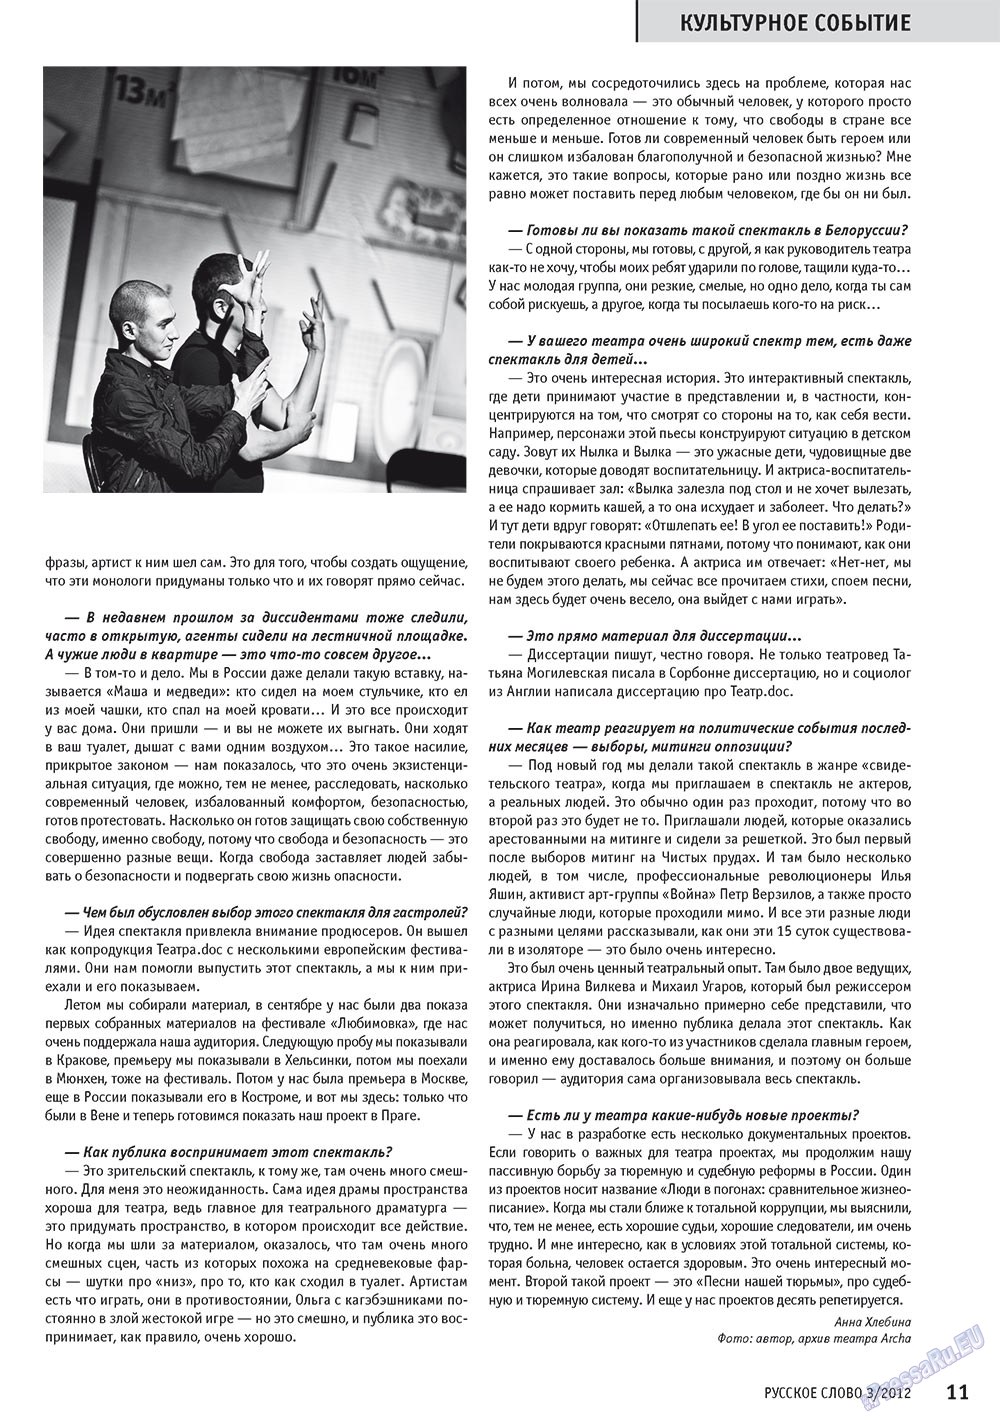 Русское слово, журнал. 2012 №3 стр.12